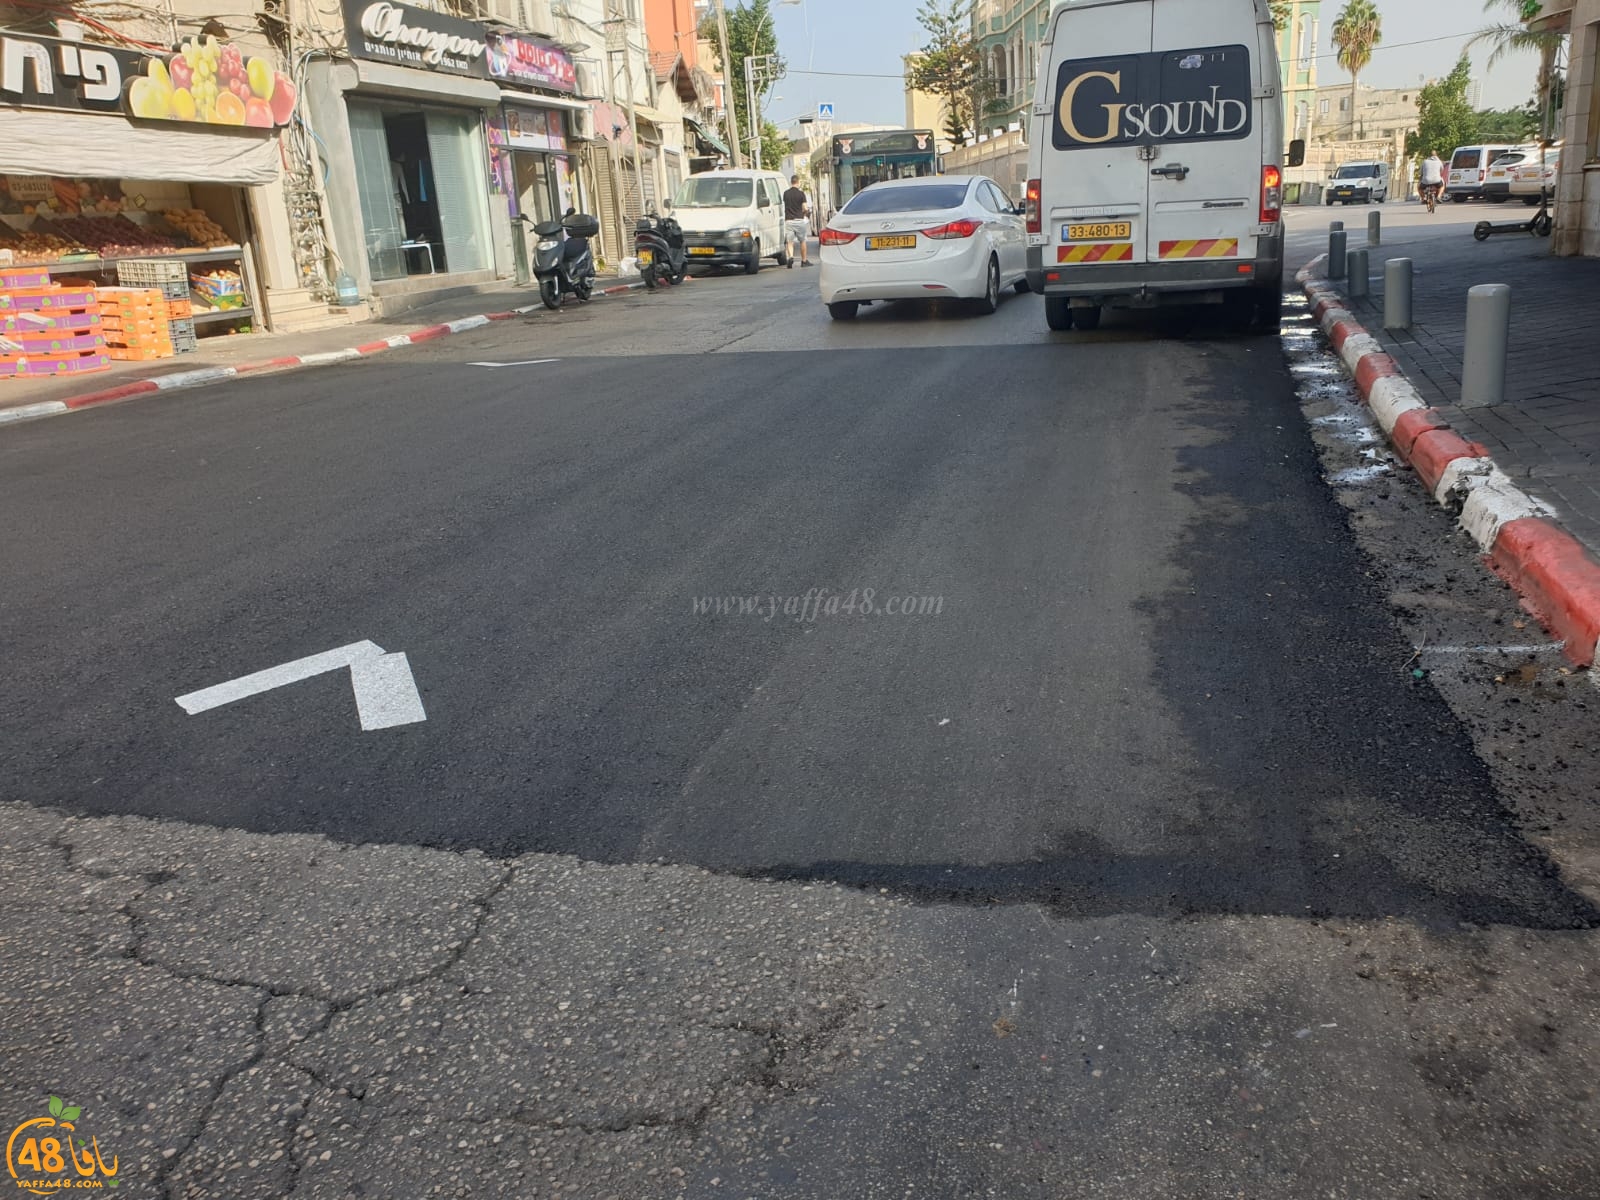  يافا: البلدية تنصاع لمطالب السكان - انشاء مطبات في شارع ييفت للحد من الحوادث